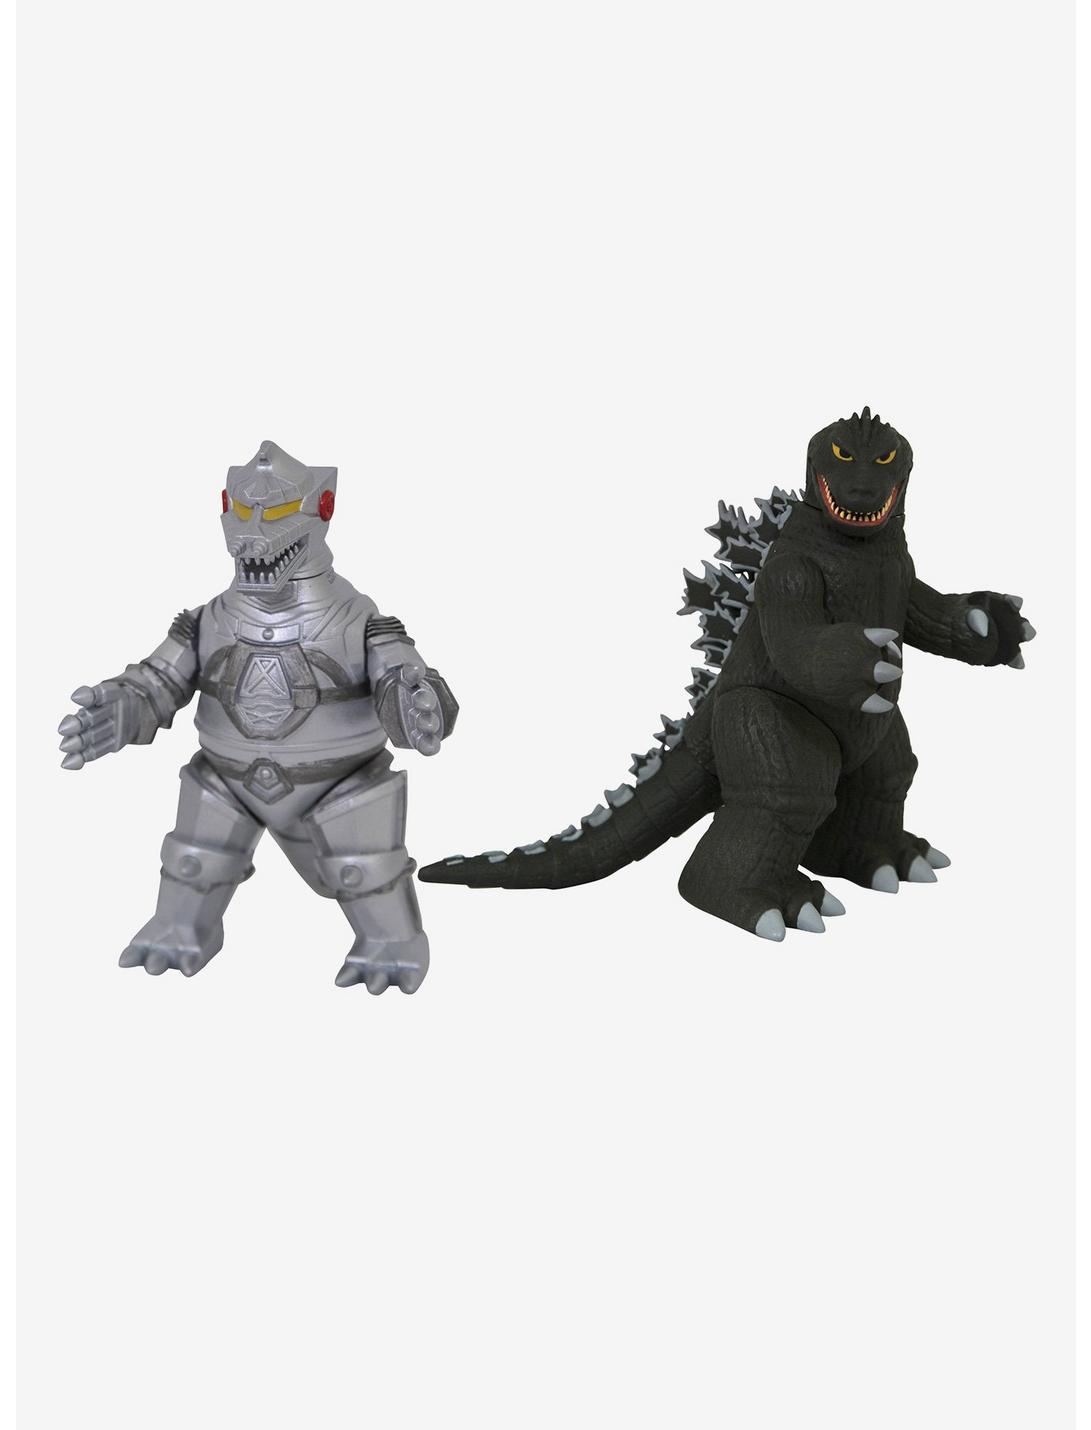 Godzilla Vinimates Mechagodzilla & Godzilla (1962 Ver.) Figure Set, , hi-res